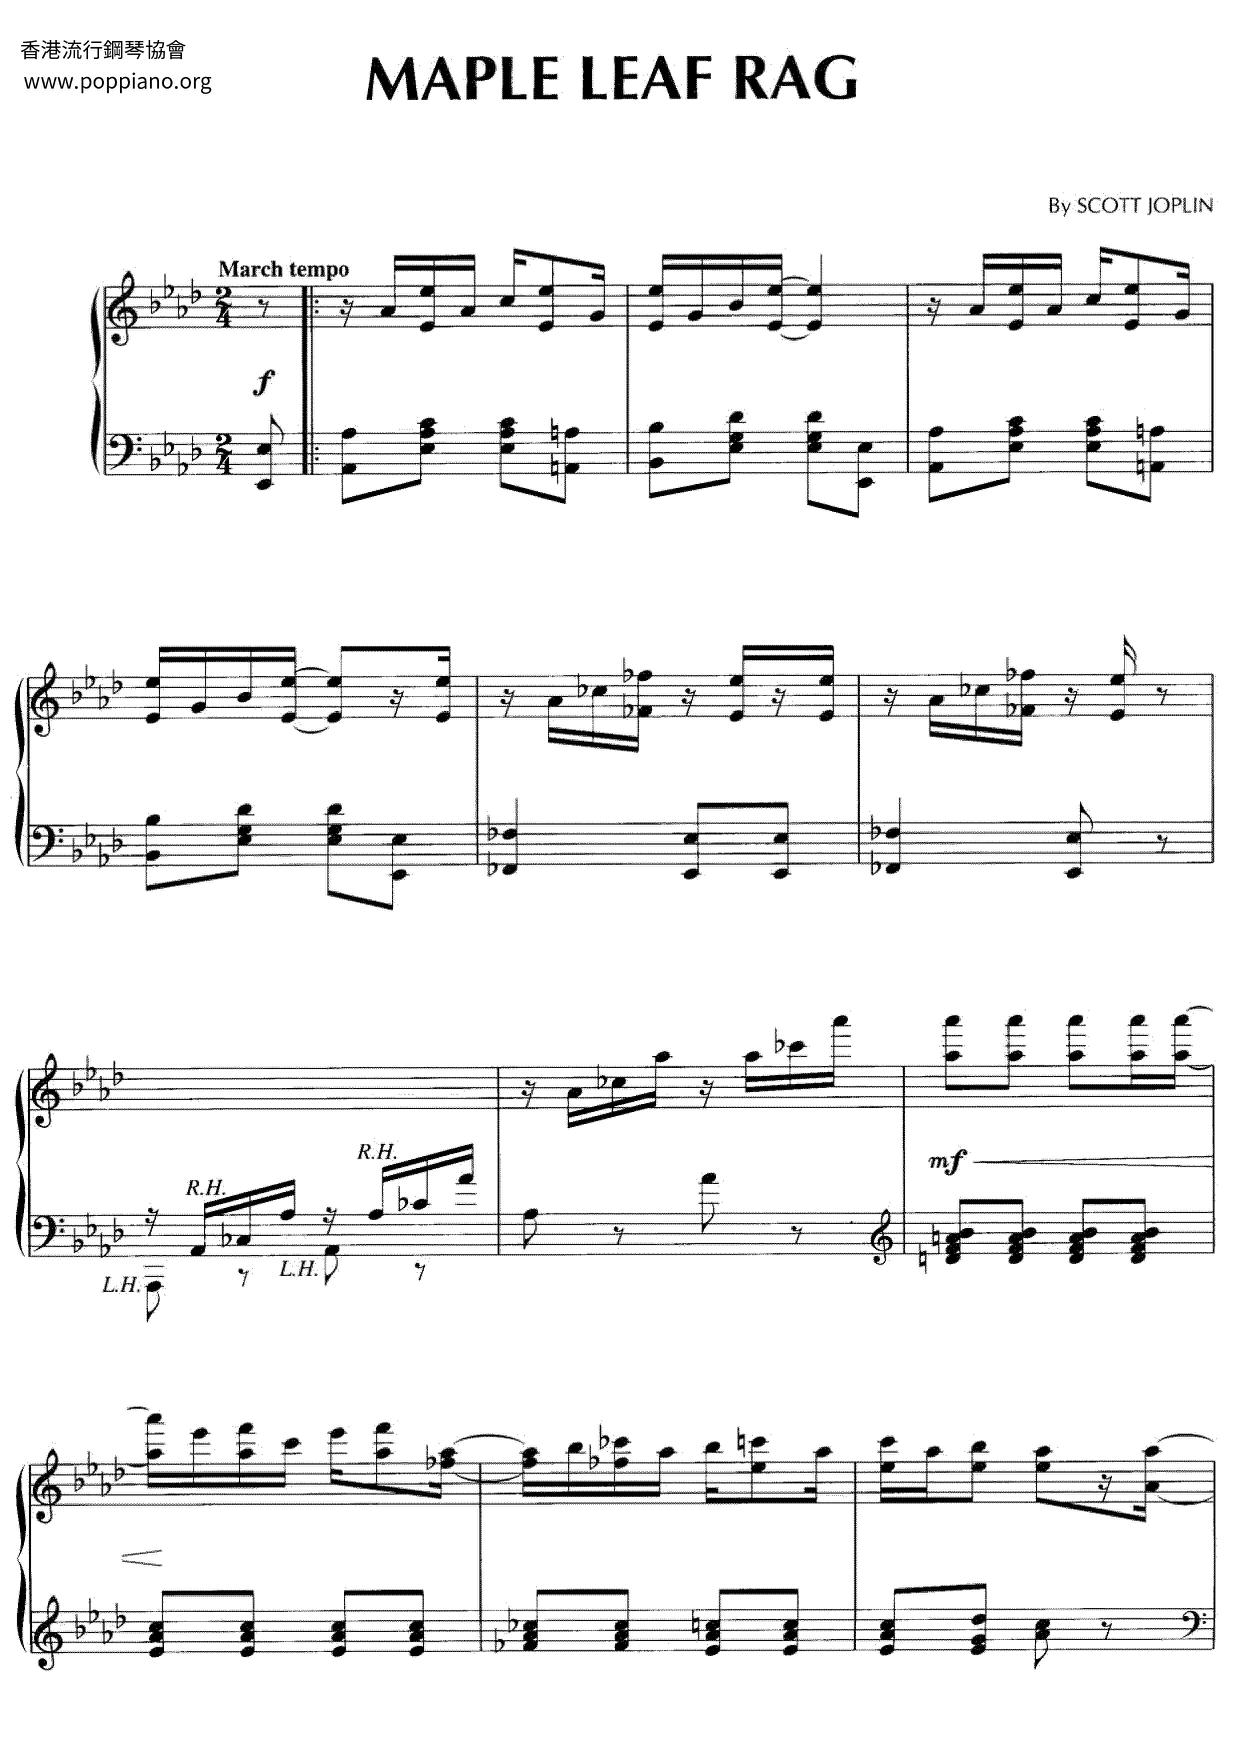 Maple Leaf Ragピアノ譜